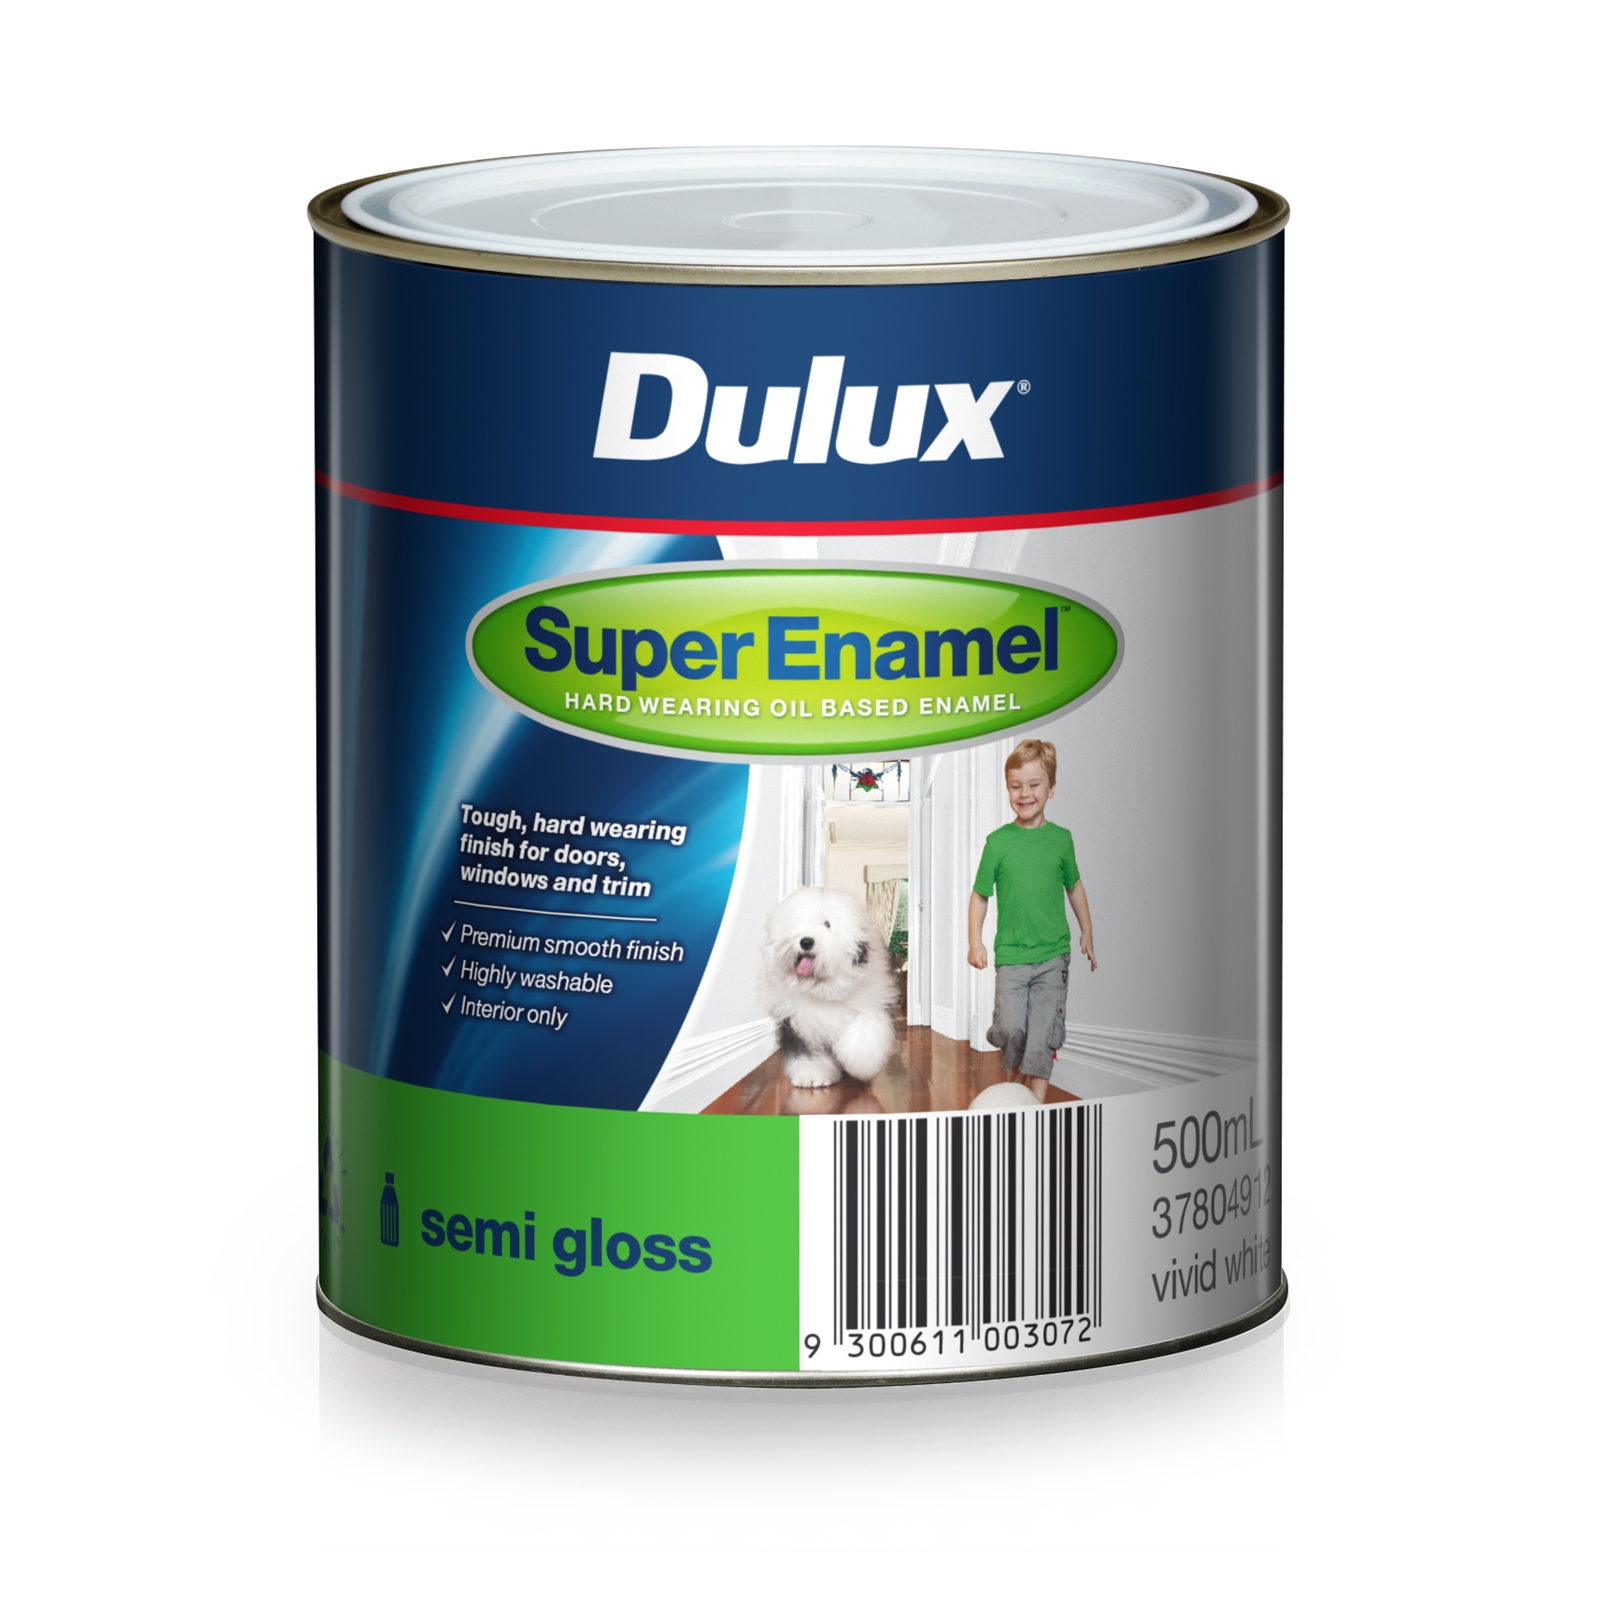 Dulux Super Enamel 500ml Semi Gloss vivid White Enamel Paint